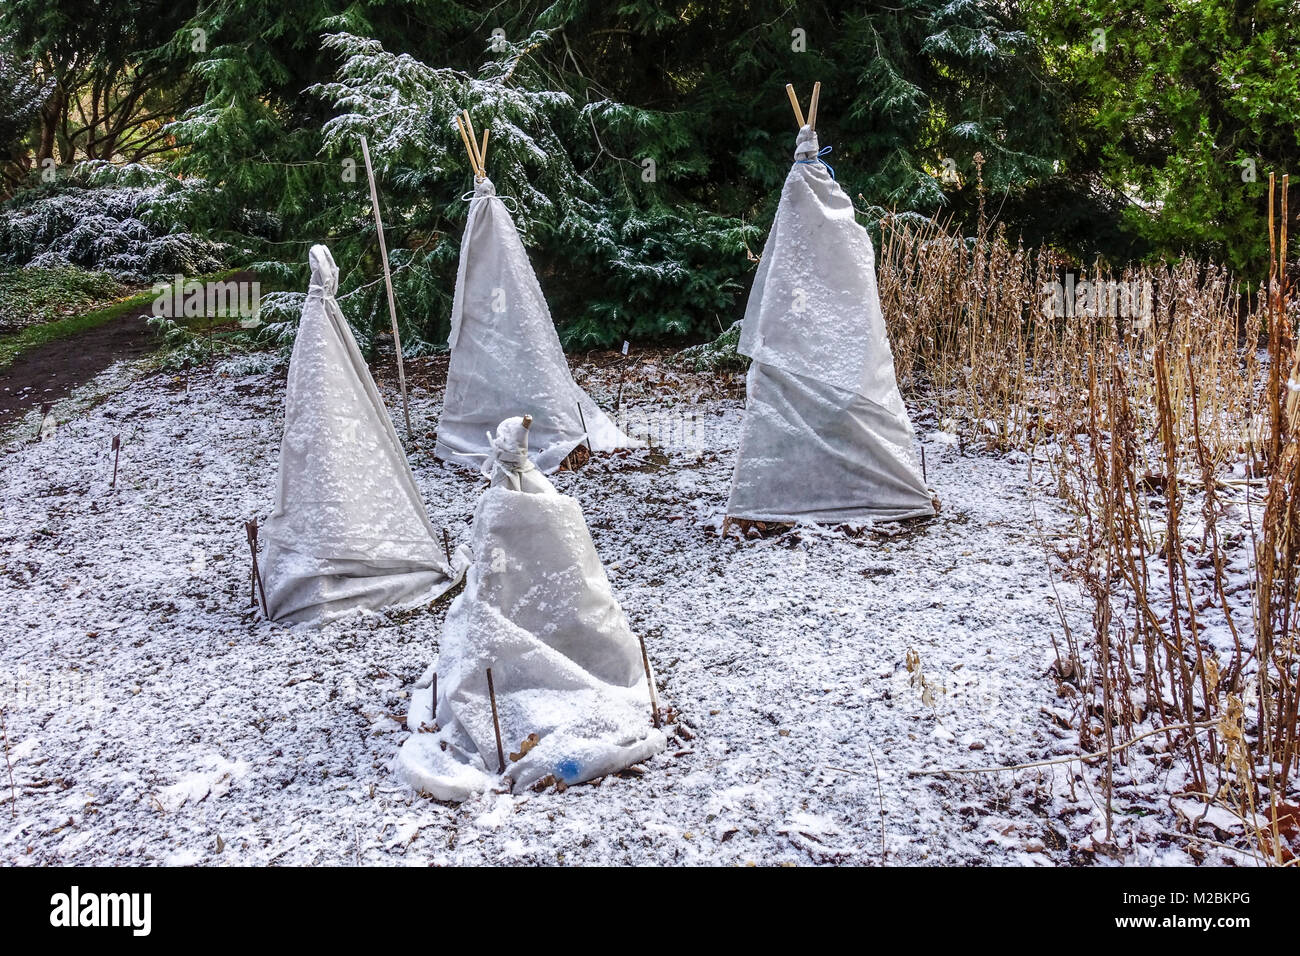 La toile horticole protège les plantes contre le gel et le gel hivernal dans un jardin, et les plantes de protection hivernales couvertes Banque D'Images